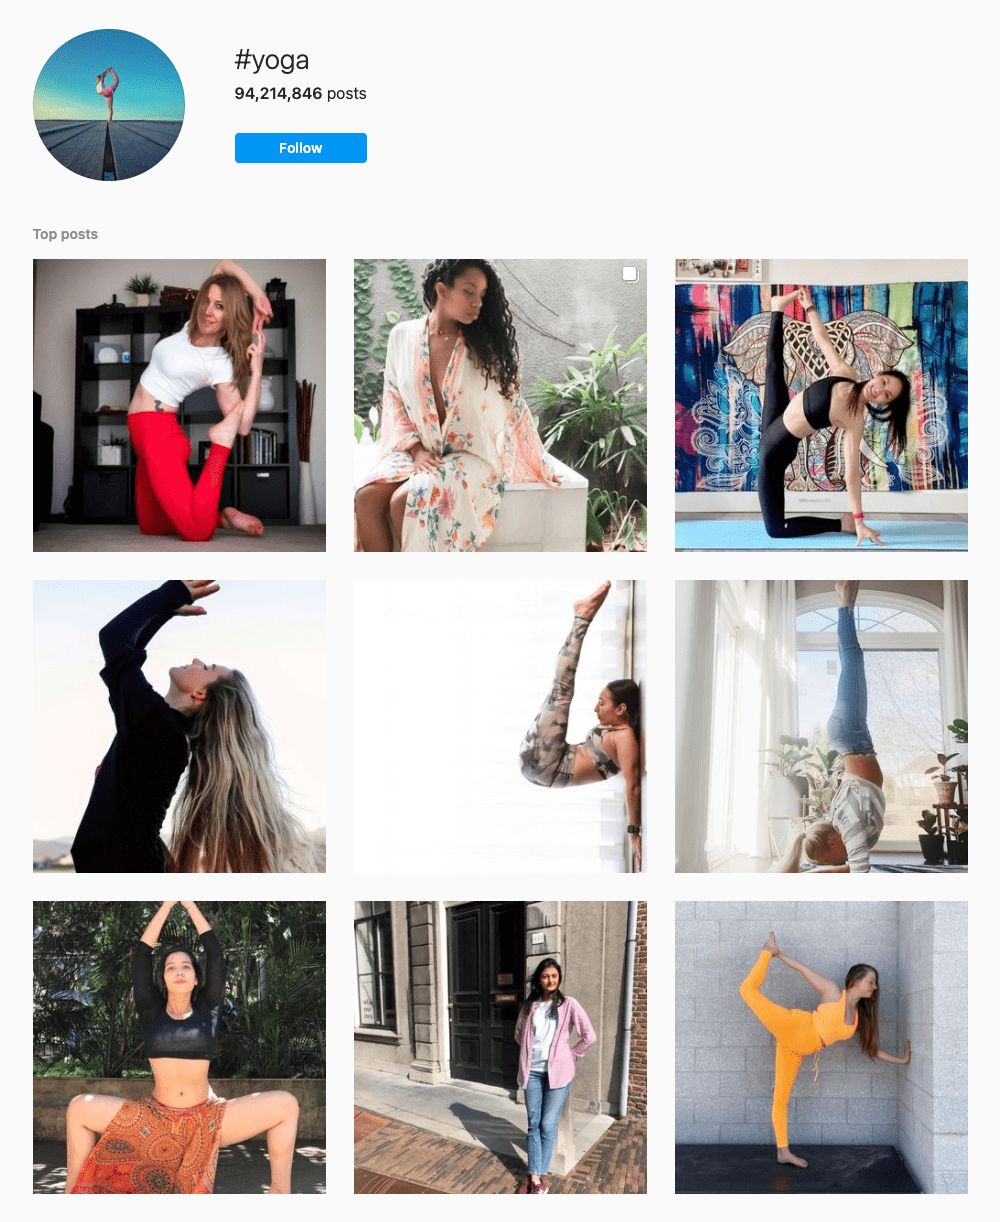 #yoga Hashtags for Instagram